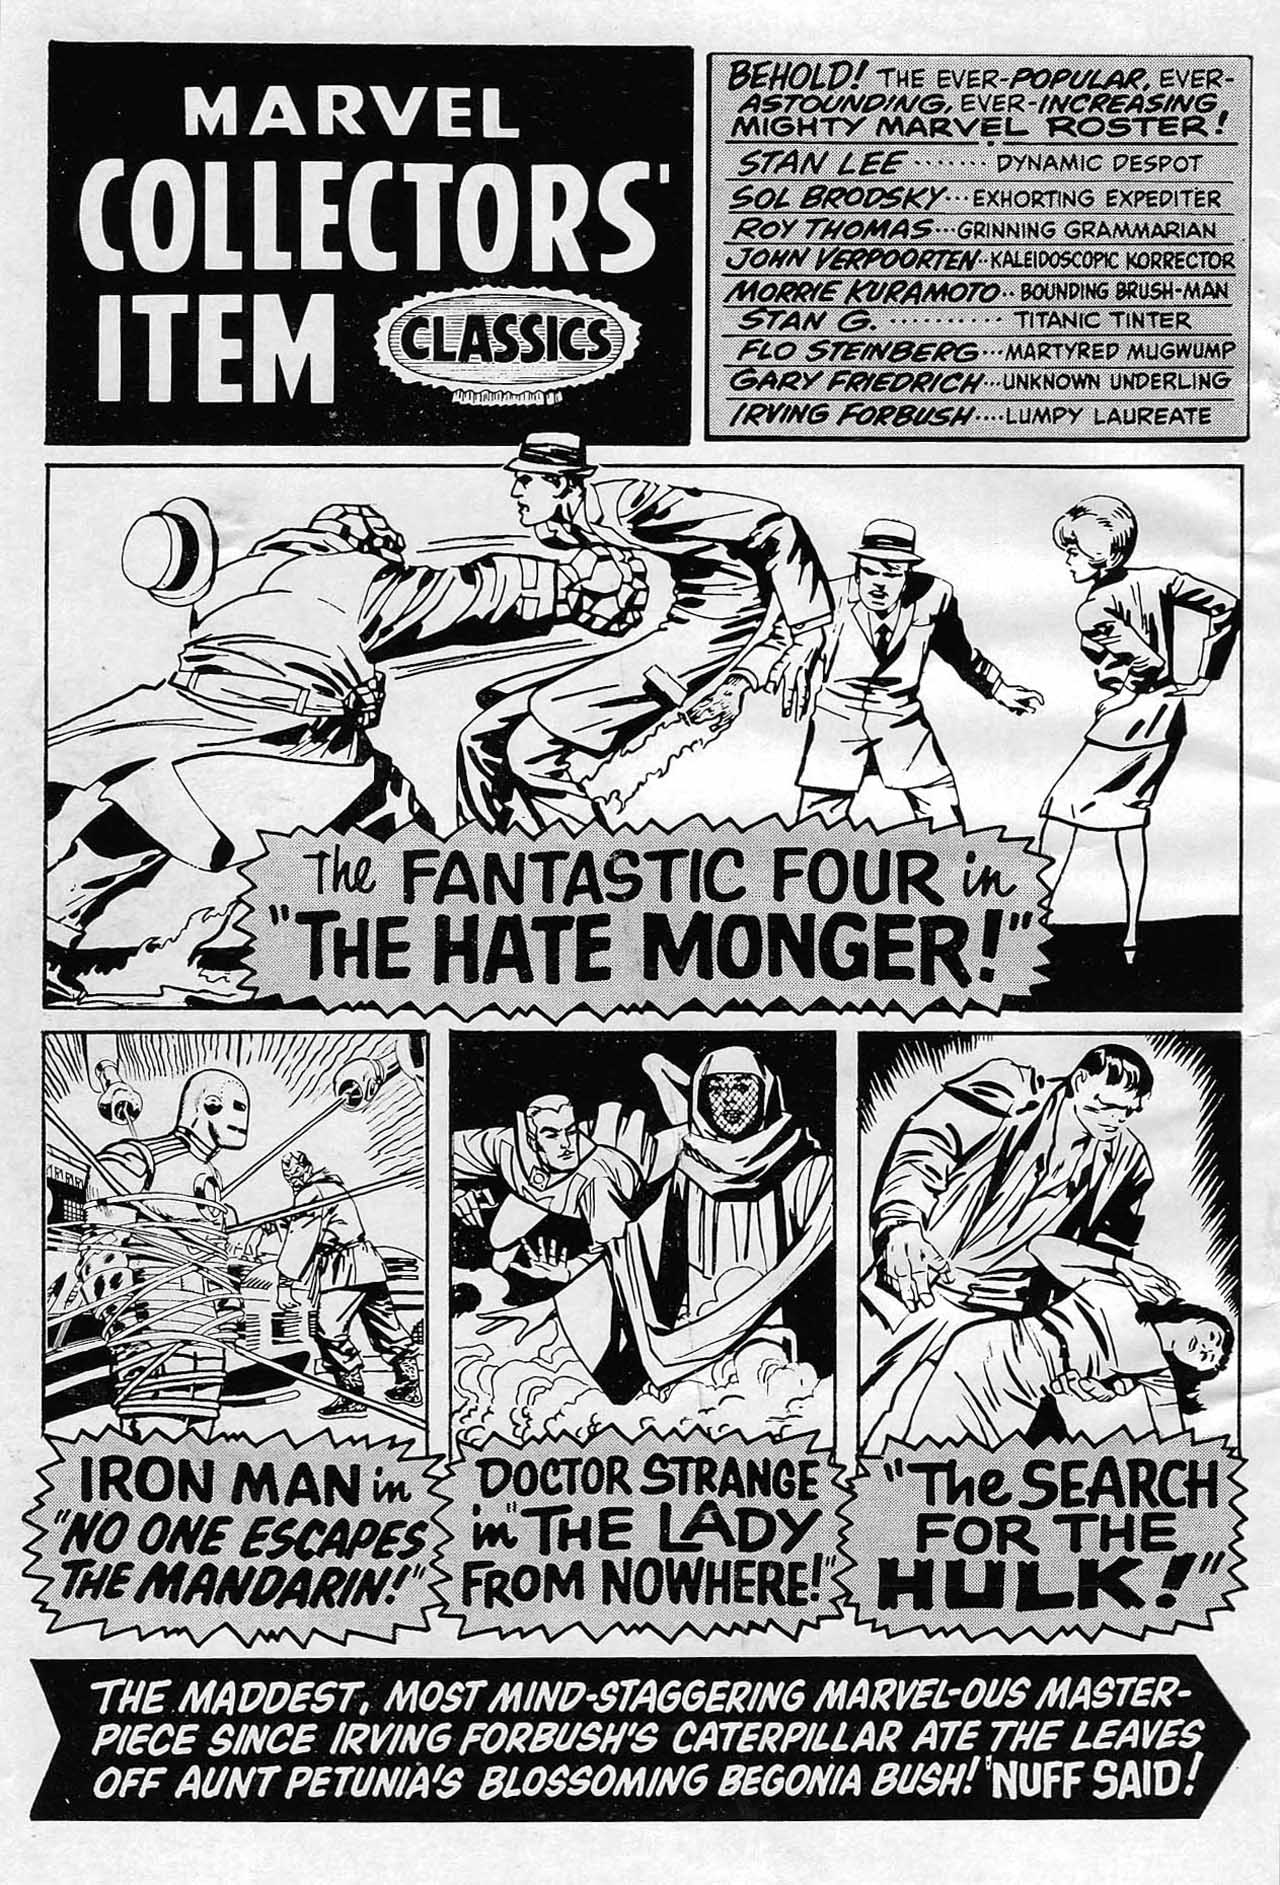 Read online Marvel Collectors' Item Classics comic -  Issue #15 - 2